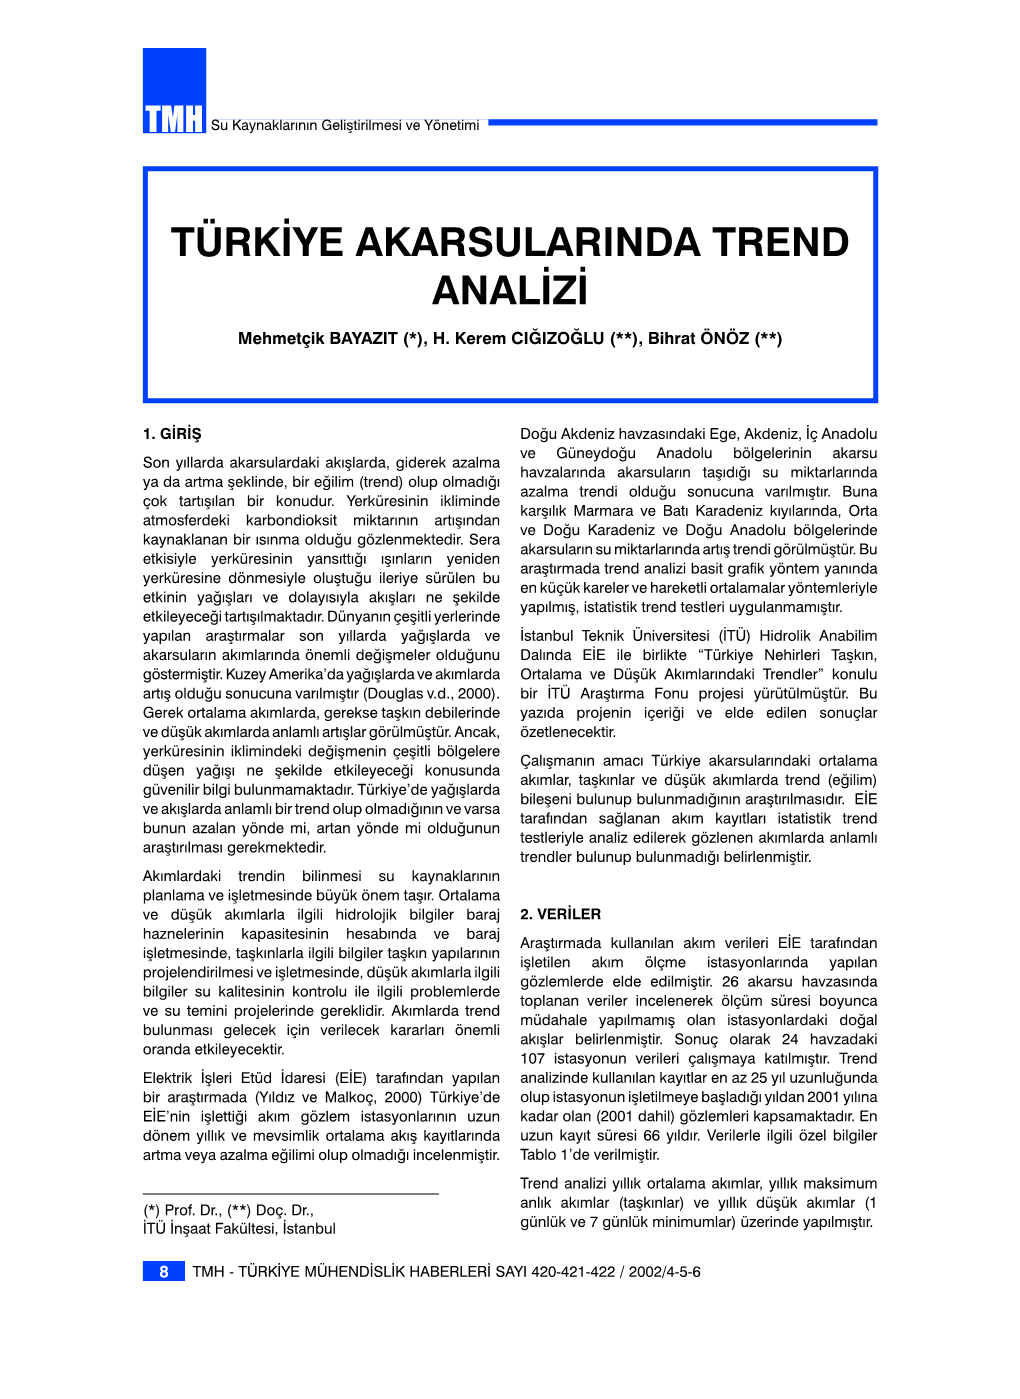 Türkiye Akarsularinda Trend Analizi